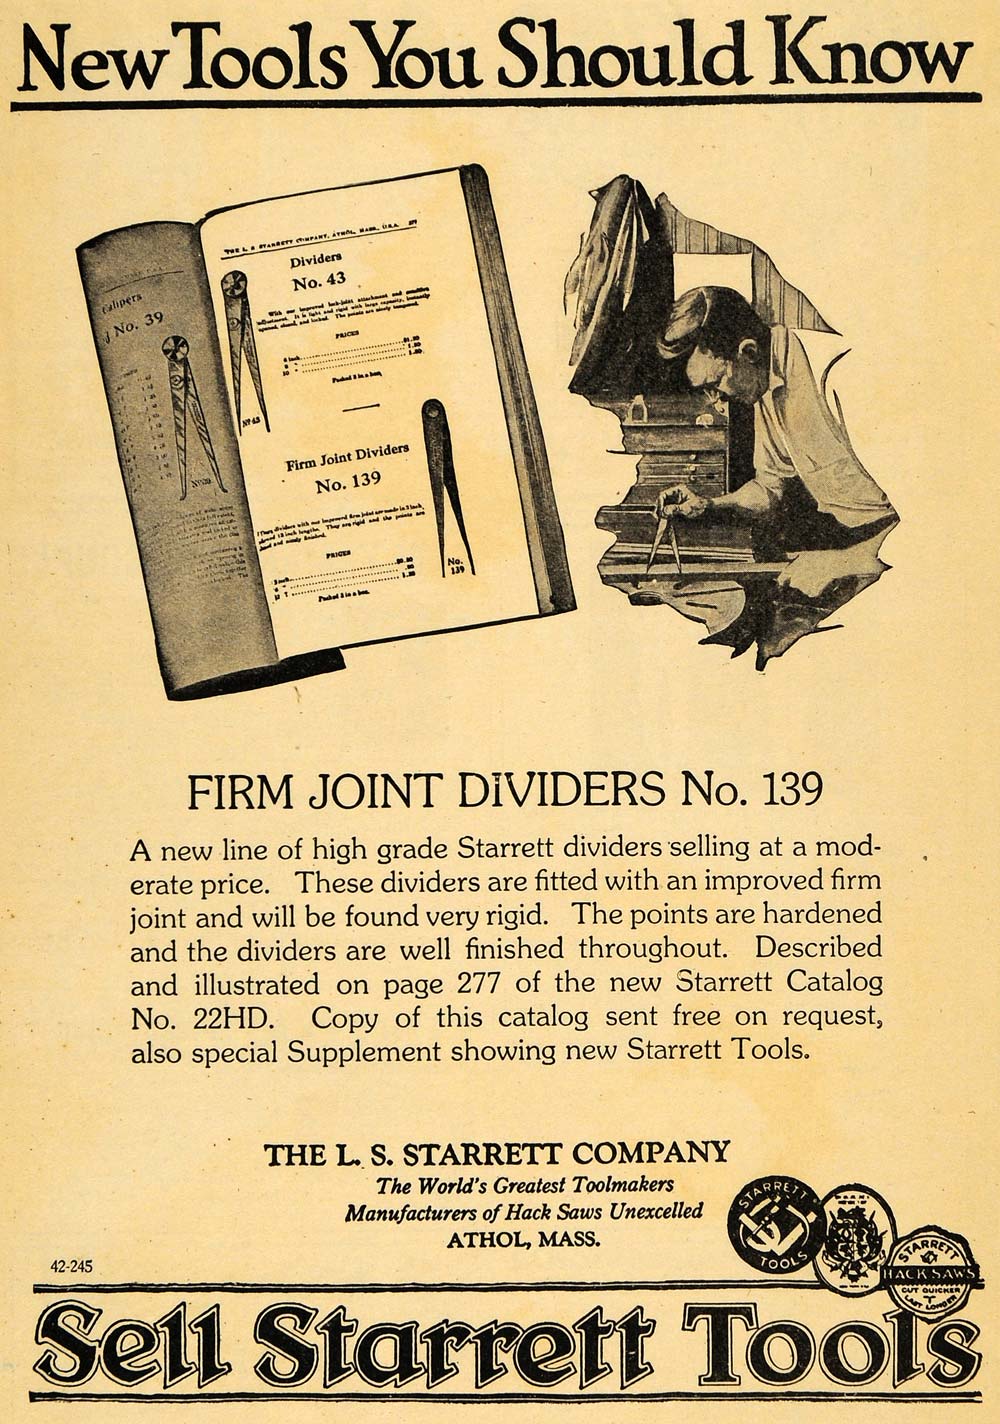 1922 Ad L. S. Starrett Toolmakers Firm Joint Dividers - ORIGINAL ILW1